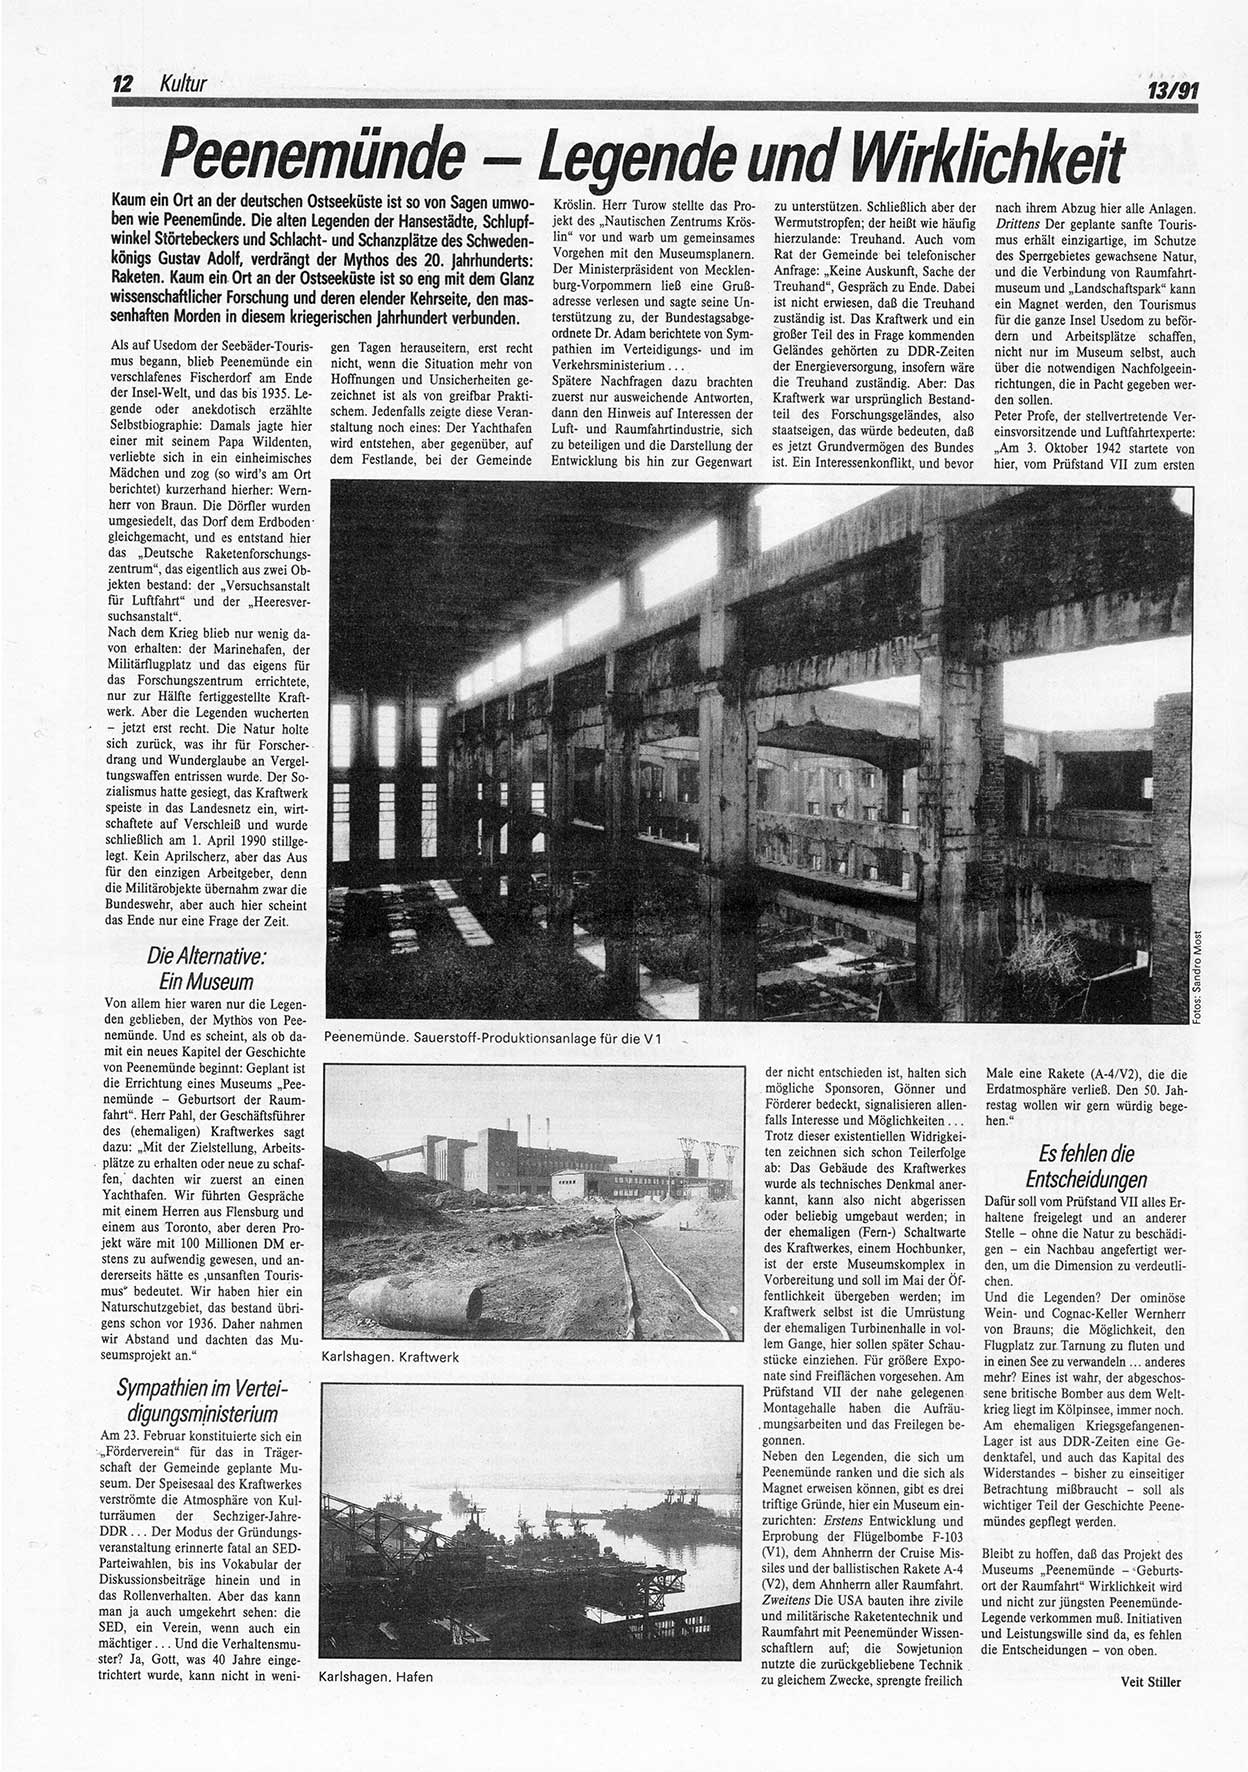 Die Andere, Unabhängige Wochenzeitung für Politik, Kultur und Kunst, Ausgabe 13 vom 27.3.1991, Seite 12 (And. W.-Zg. Ausg. 13 1991, S. 12)